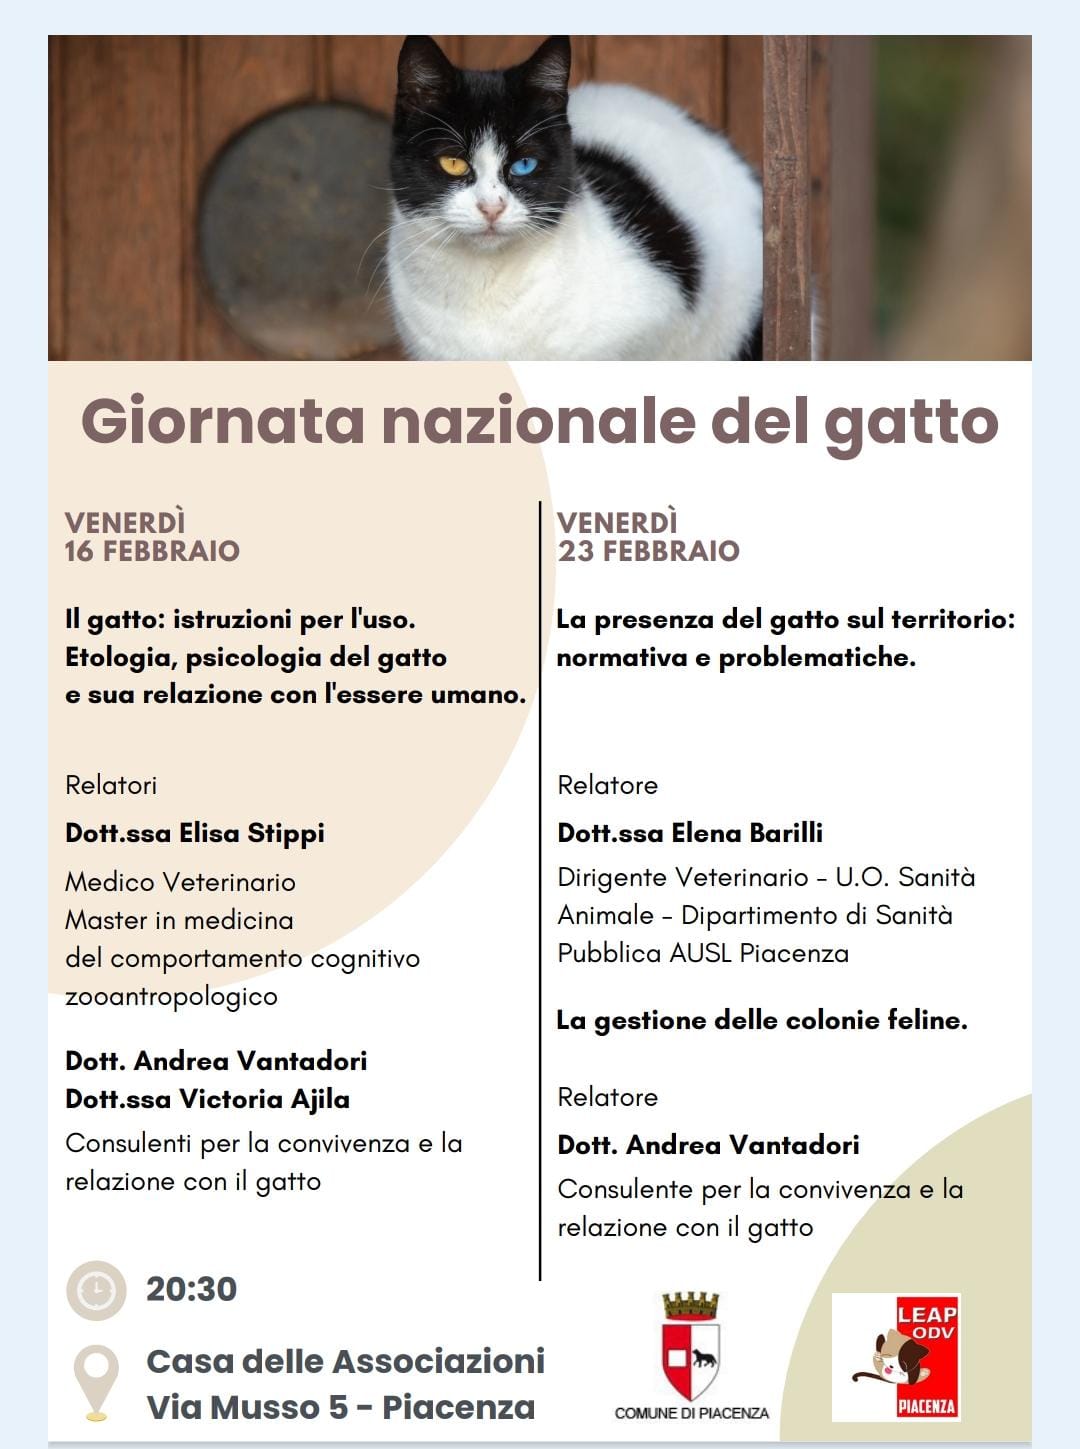 Giornata nazionale del gatto, due incontri pubblici dedicati ai felini.  Dalla relazione domestica alle colonie sul territorio - Agenparl